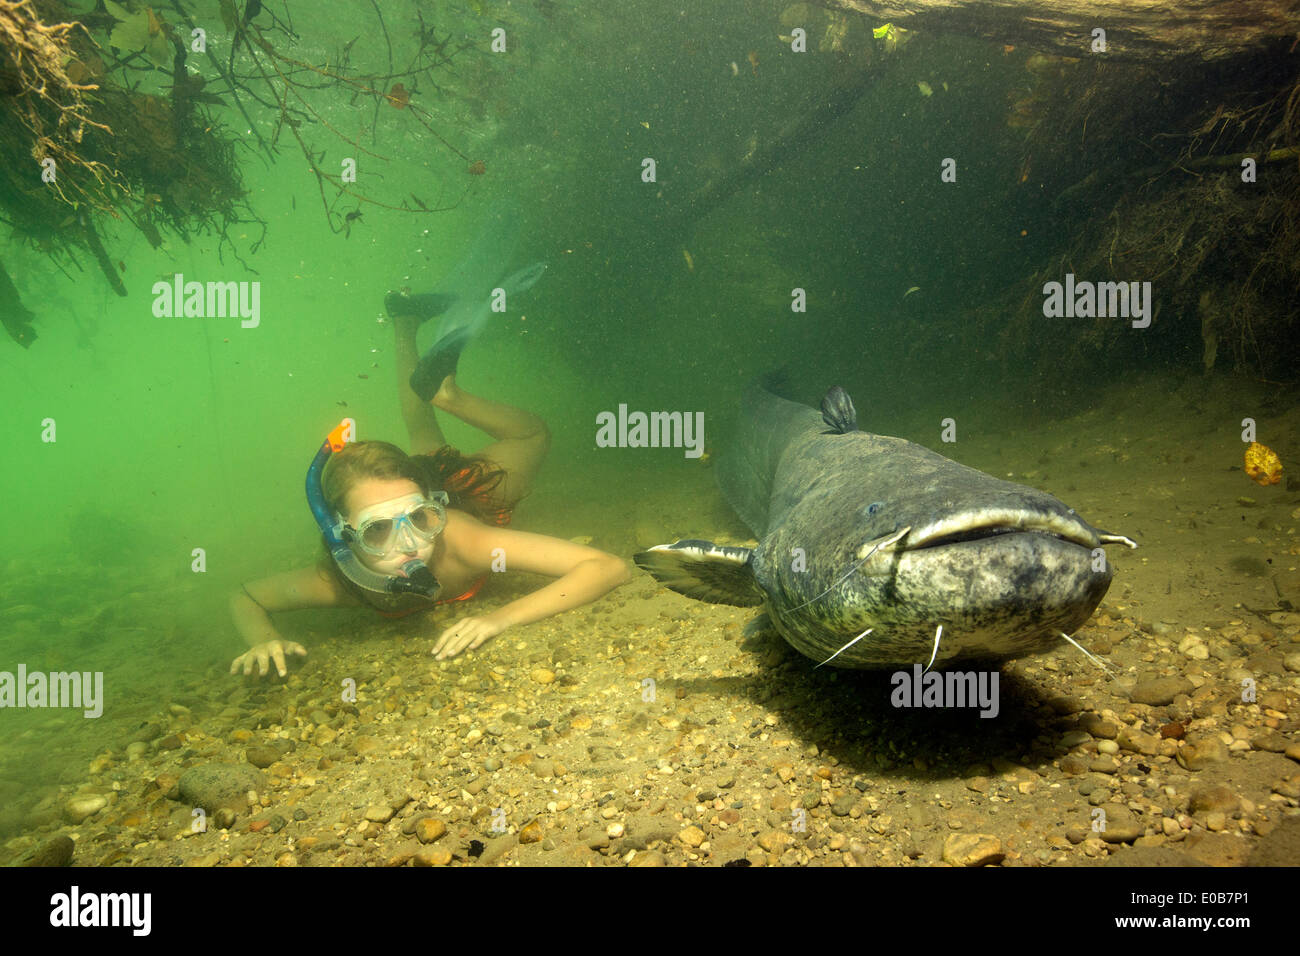 In Germania, in Baviera, ragazza immersioni con wels catfish, Silurus glande, nel fiume Alz Foto Stock